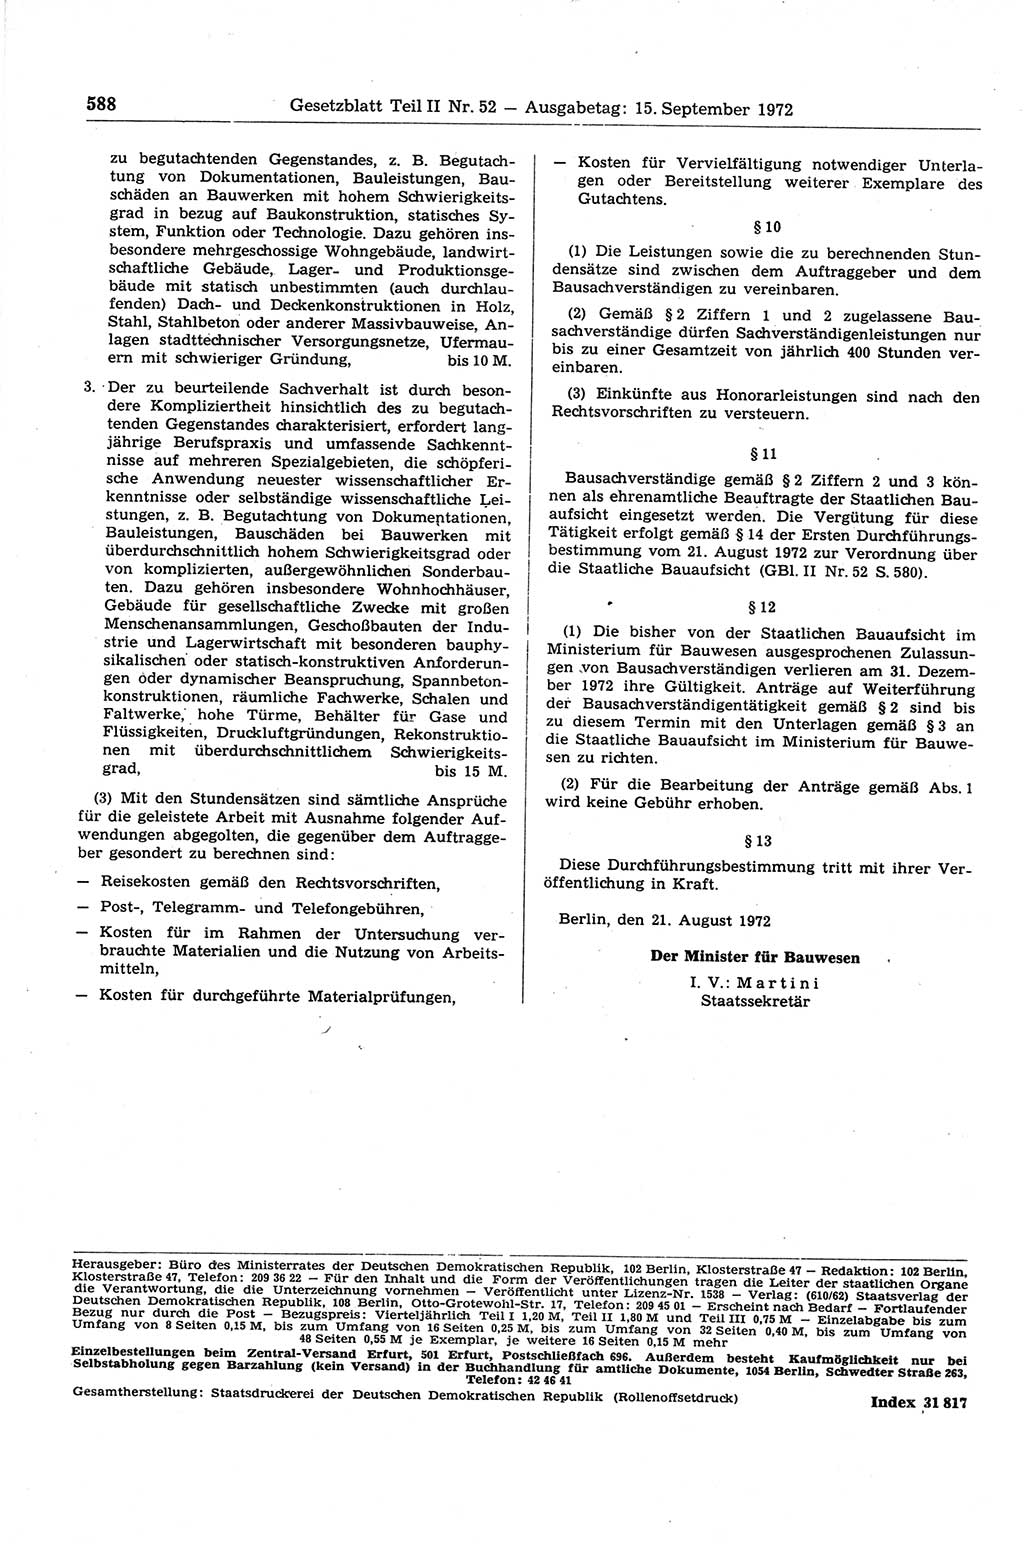 Gesetzblatt (GBl.) der Deutschen Demokratischen Republik (DDR) Teil ⅠⅠ 1972, Seite 588 (GBl. DDR ⅠⅠ 1972, S. 588)